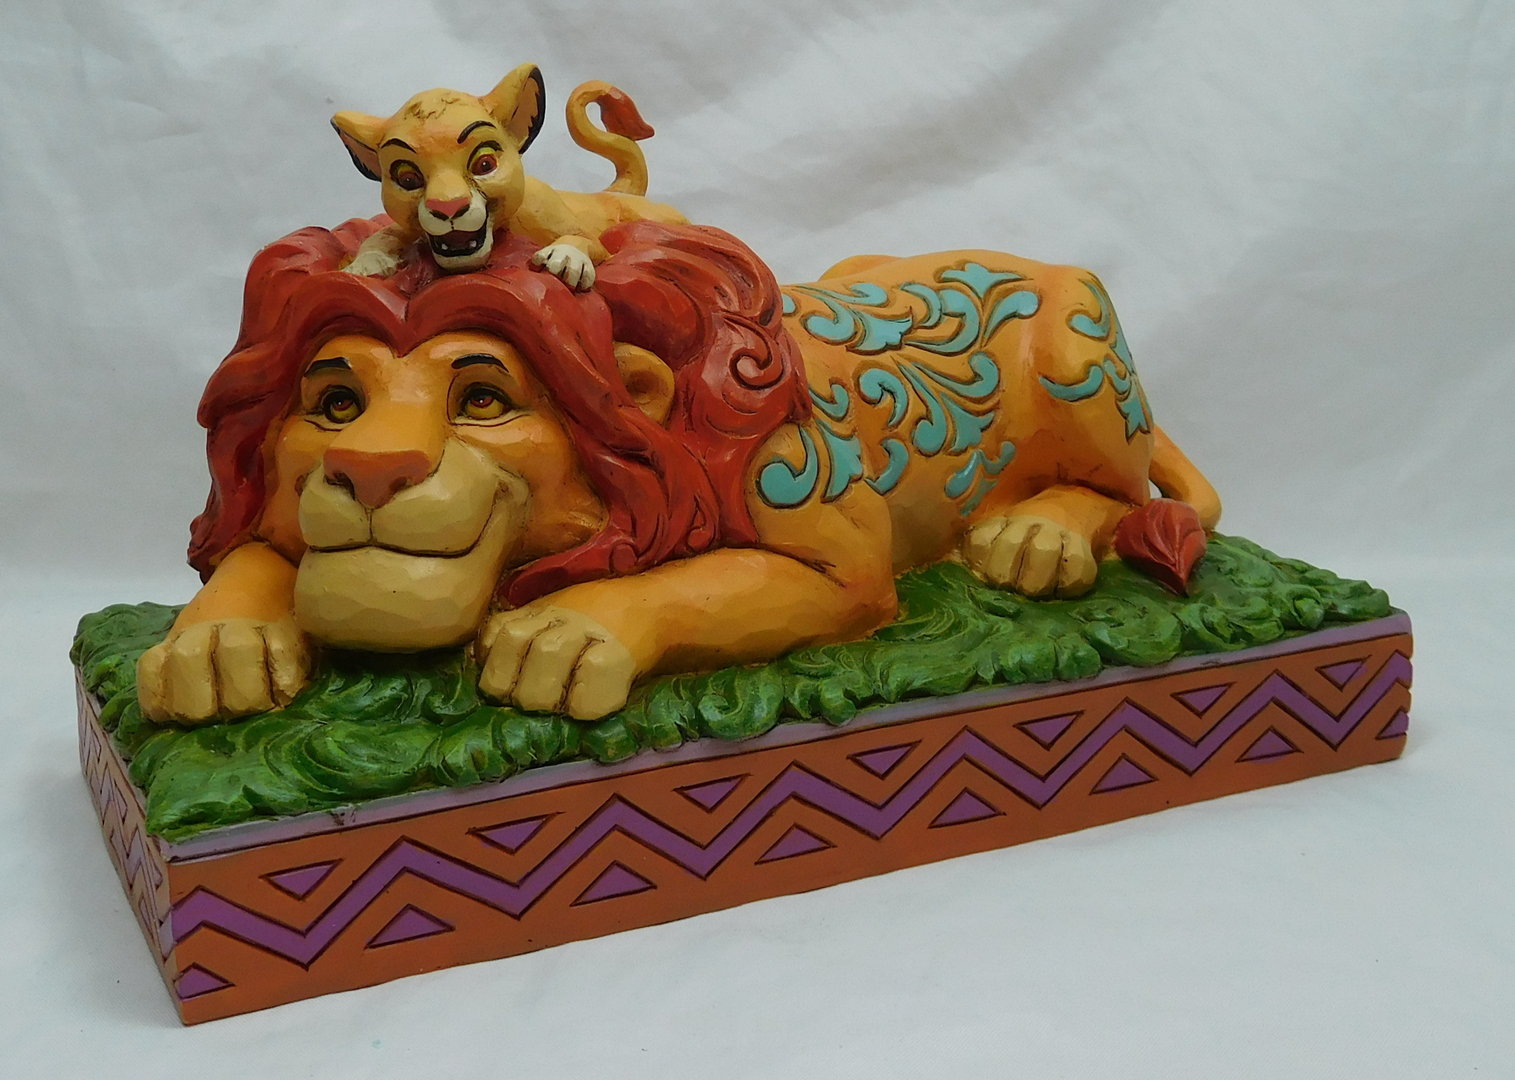 Disney Figur enesco Shore Traditions 4040432 Simba Nla König der Löwen Pride Roc